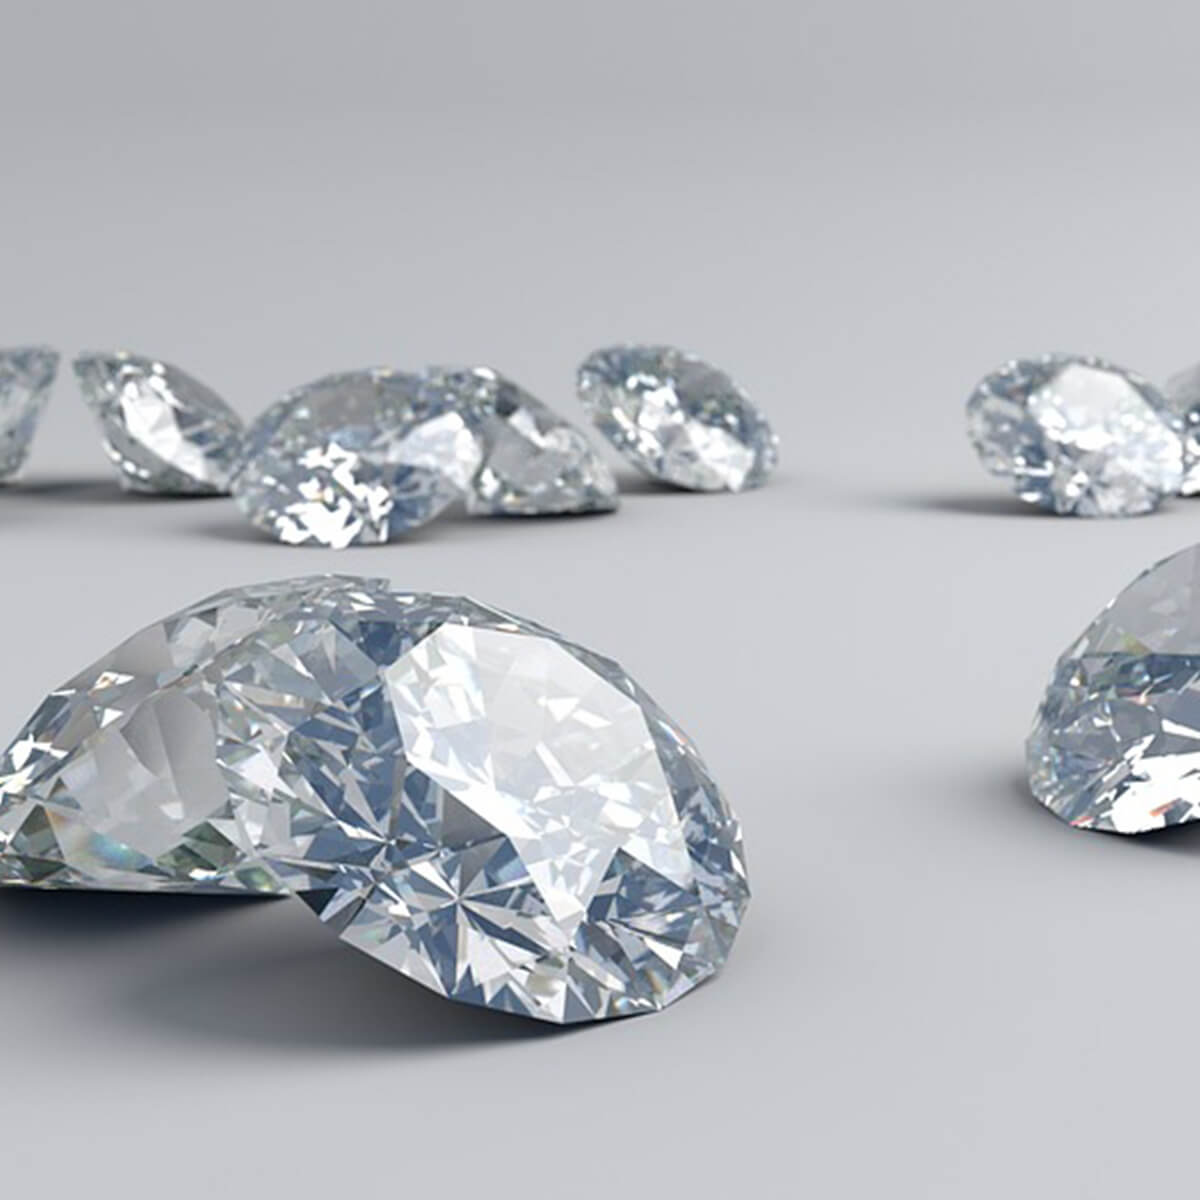 Valore delle pietre preziose: quanto influisce il fattore purezza